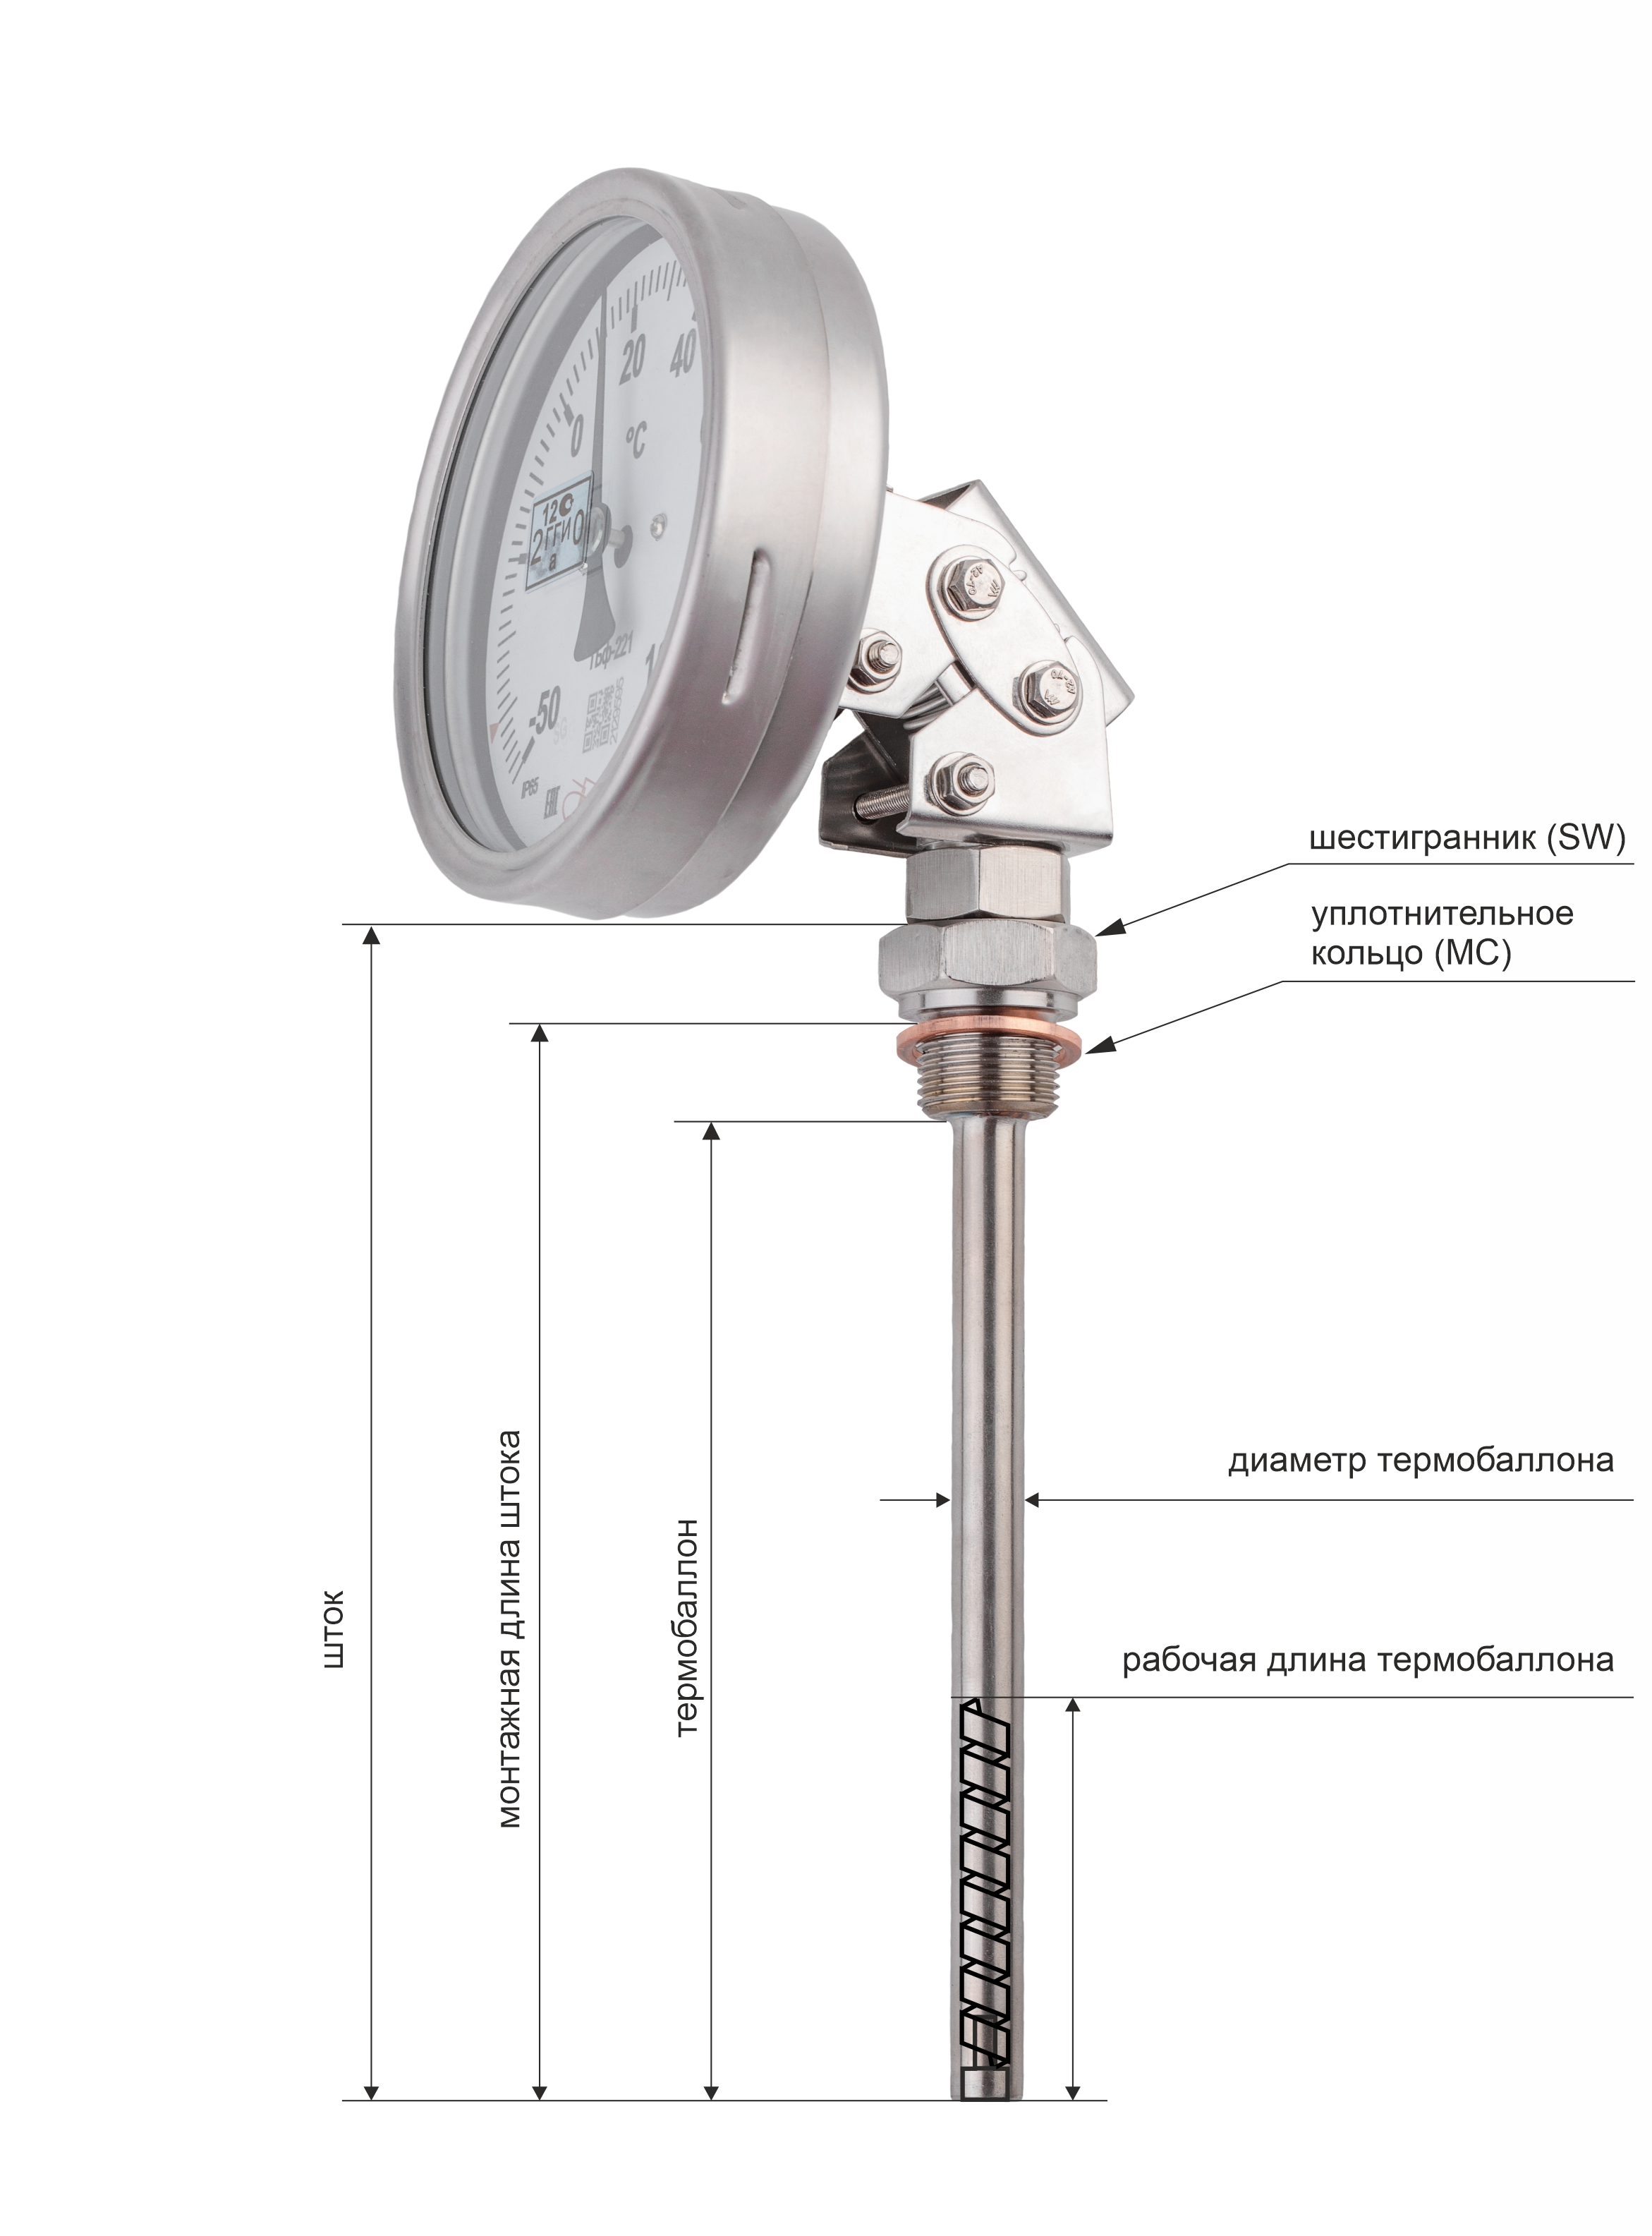 Термометры биметаллические коррозионностойкие ТБф-224 IP65 с возможностью гидрозаполнения (Диаметр: 100 мм, 160 мм)